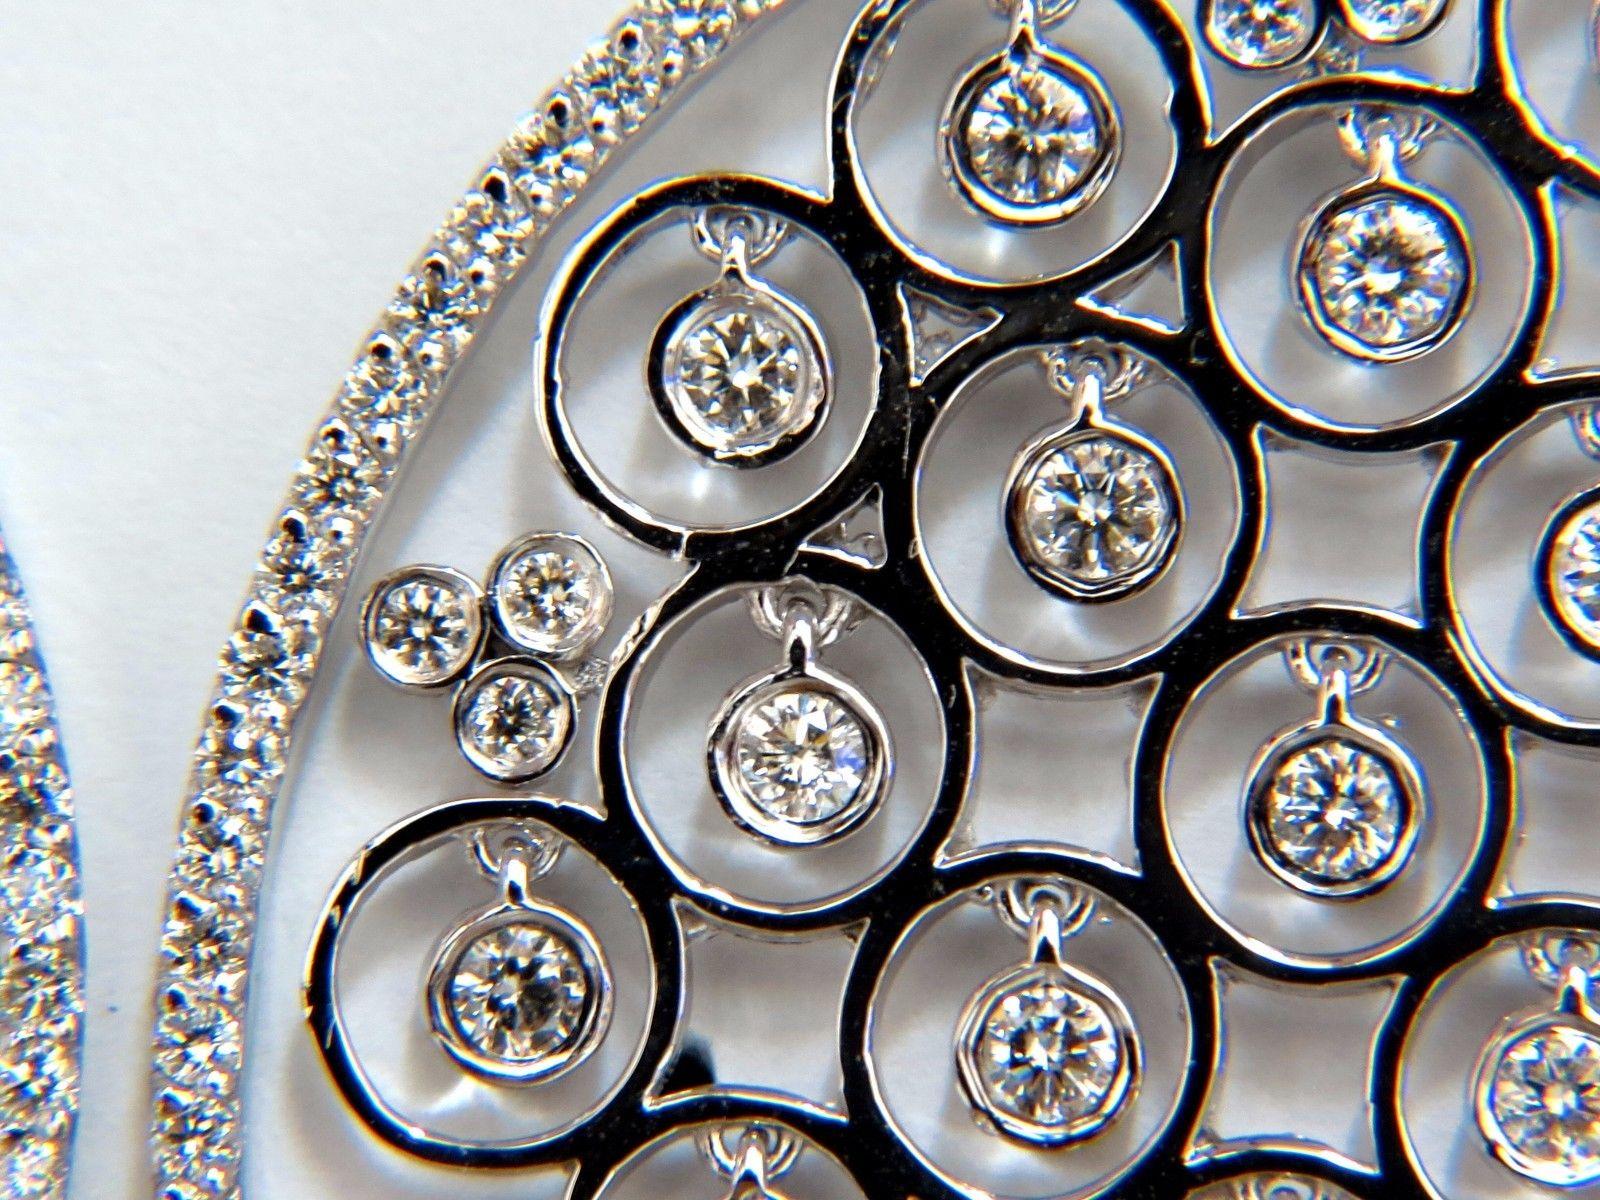 Kreisförmige Diamant-Ohrringe.

5.70cts von natürlichen runden Diamanten: 

F/G-Farbe, Vs-2  klarheit.

14kt. Weißgold

27.3 Gramm.

Ohrringe messen: 2,4 Zoll lang

1.76 Zoll Durchmesser (Kreis)

.54 Zoll Durchmesser (Bogen)

Bequemer